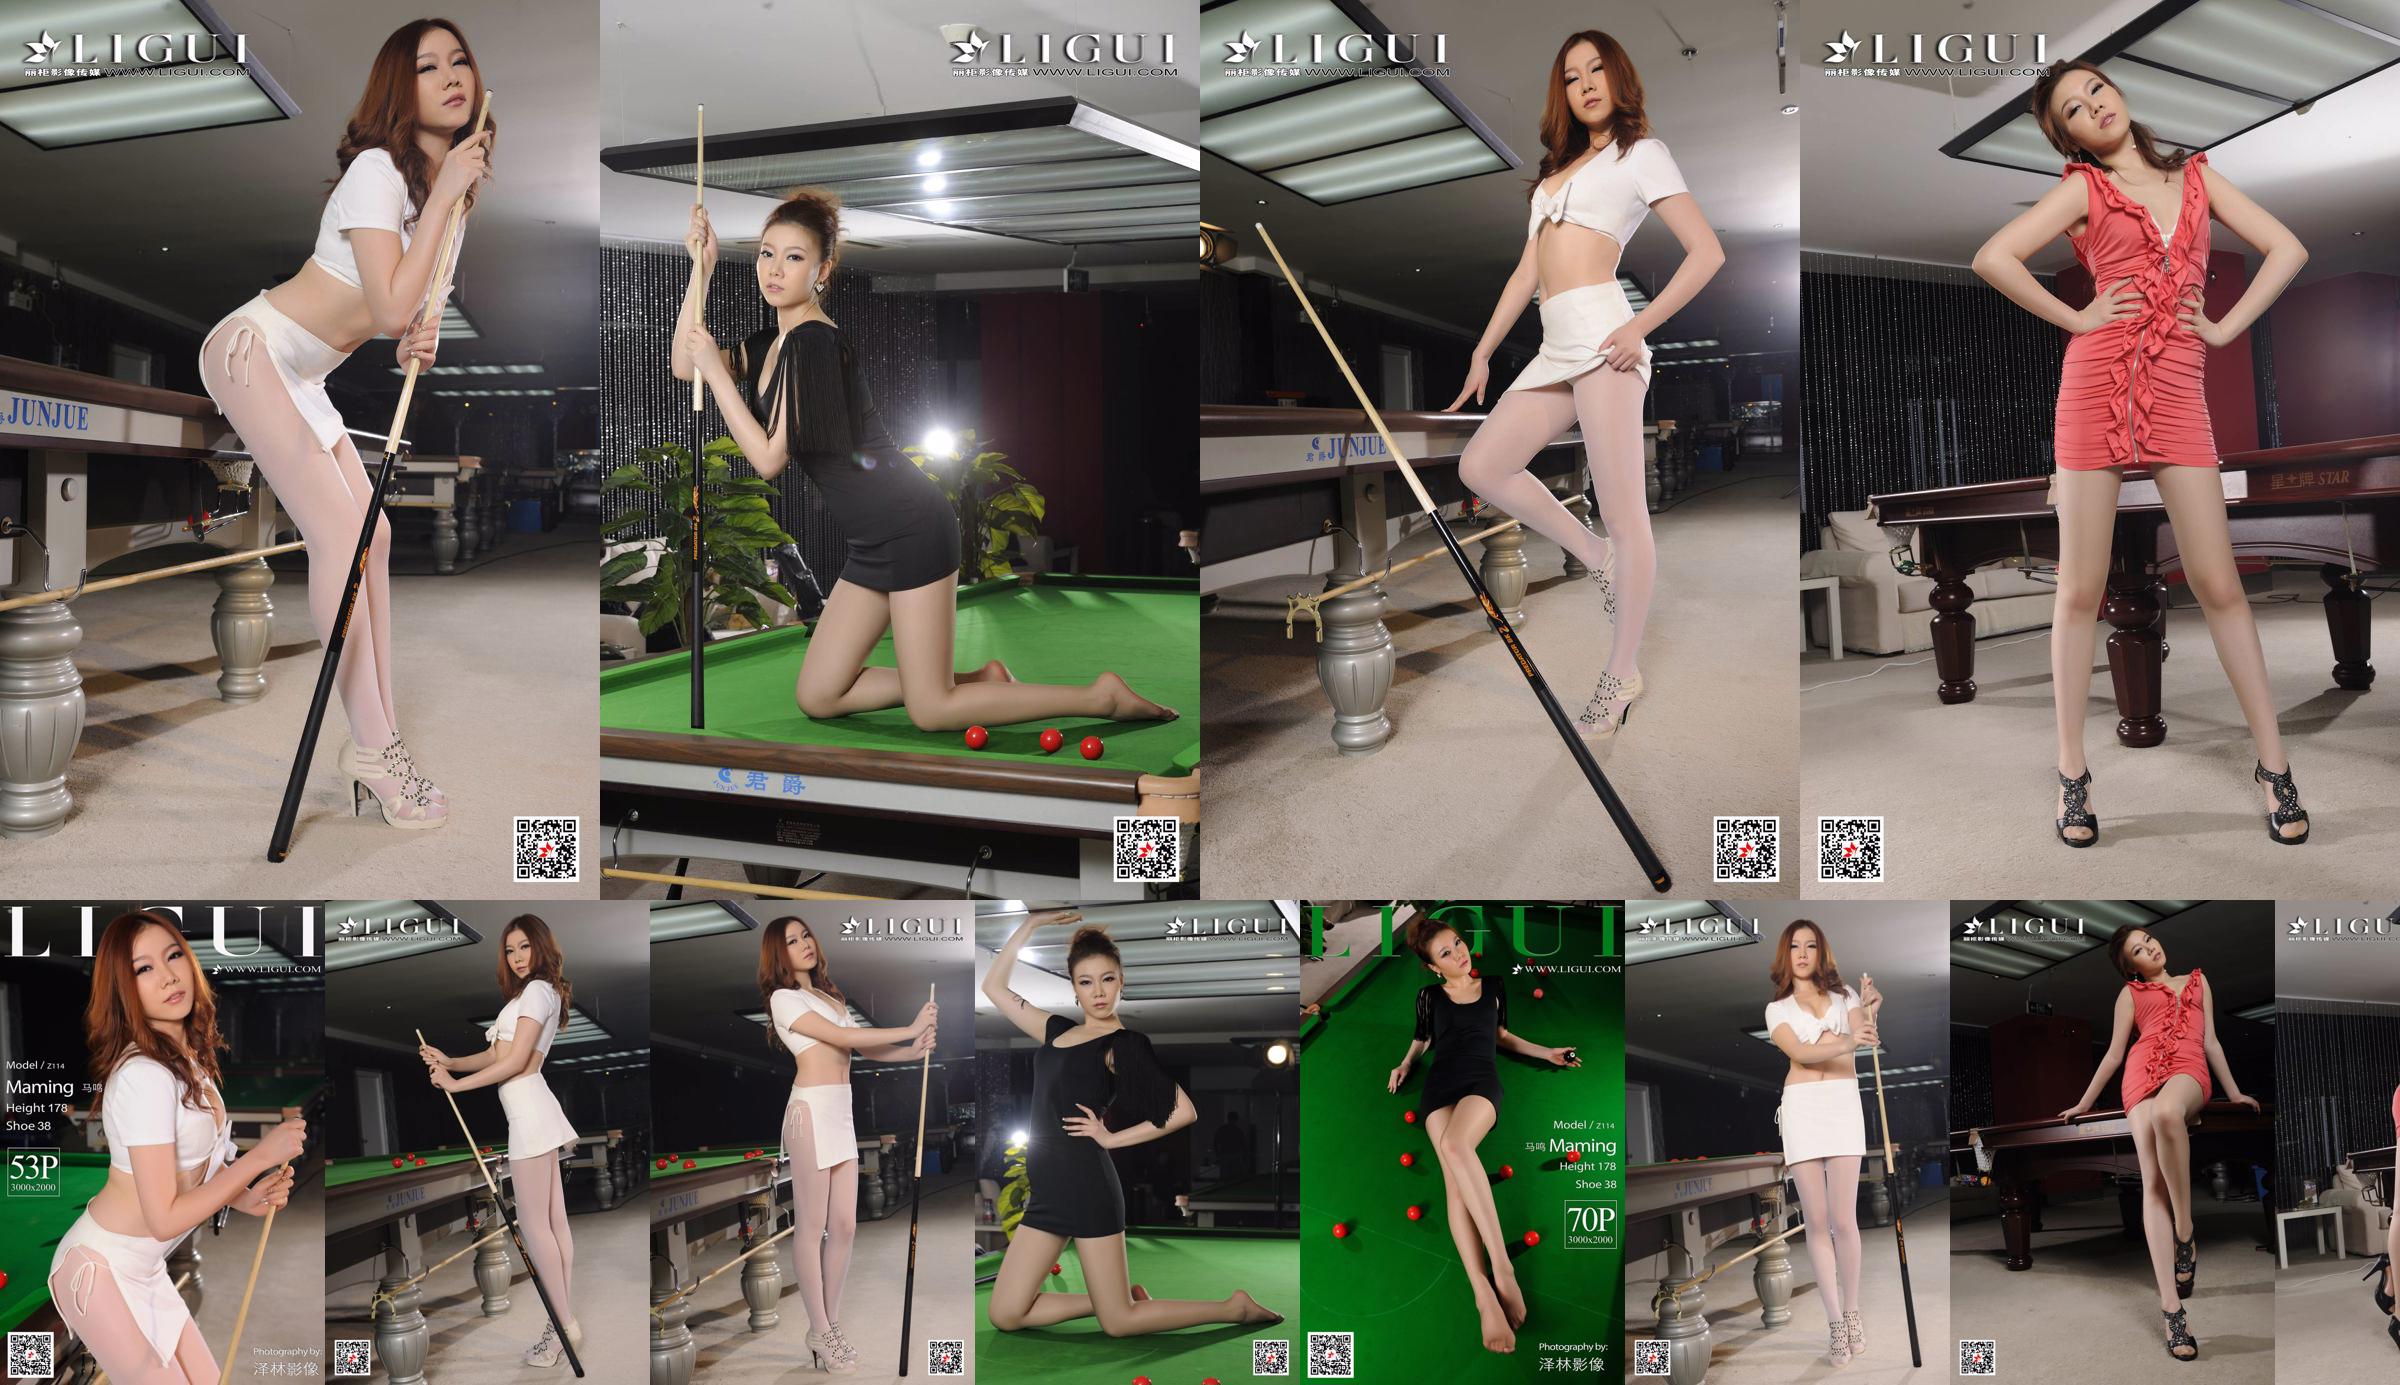 Người mẫu Mã Minh "Bai Si Uniform Billiard Girl" [Ligui Ligui] No.5389fb Trang 1